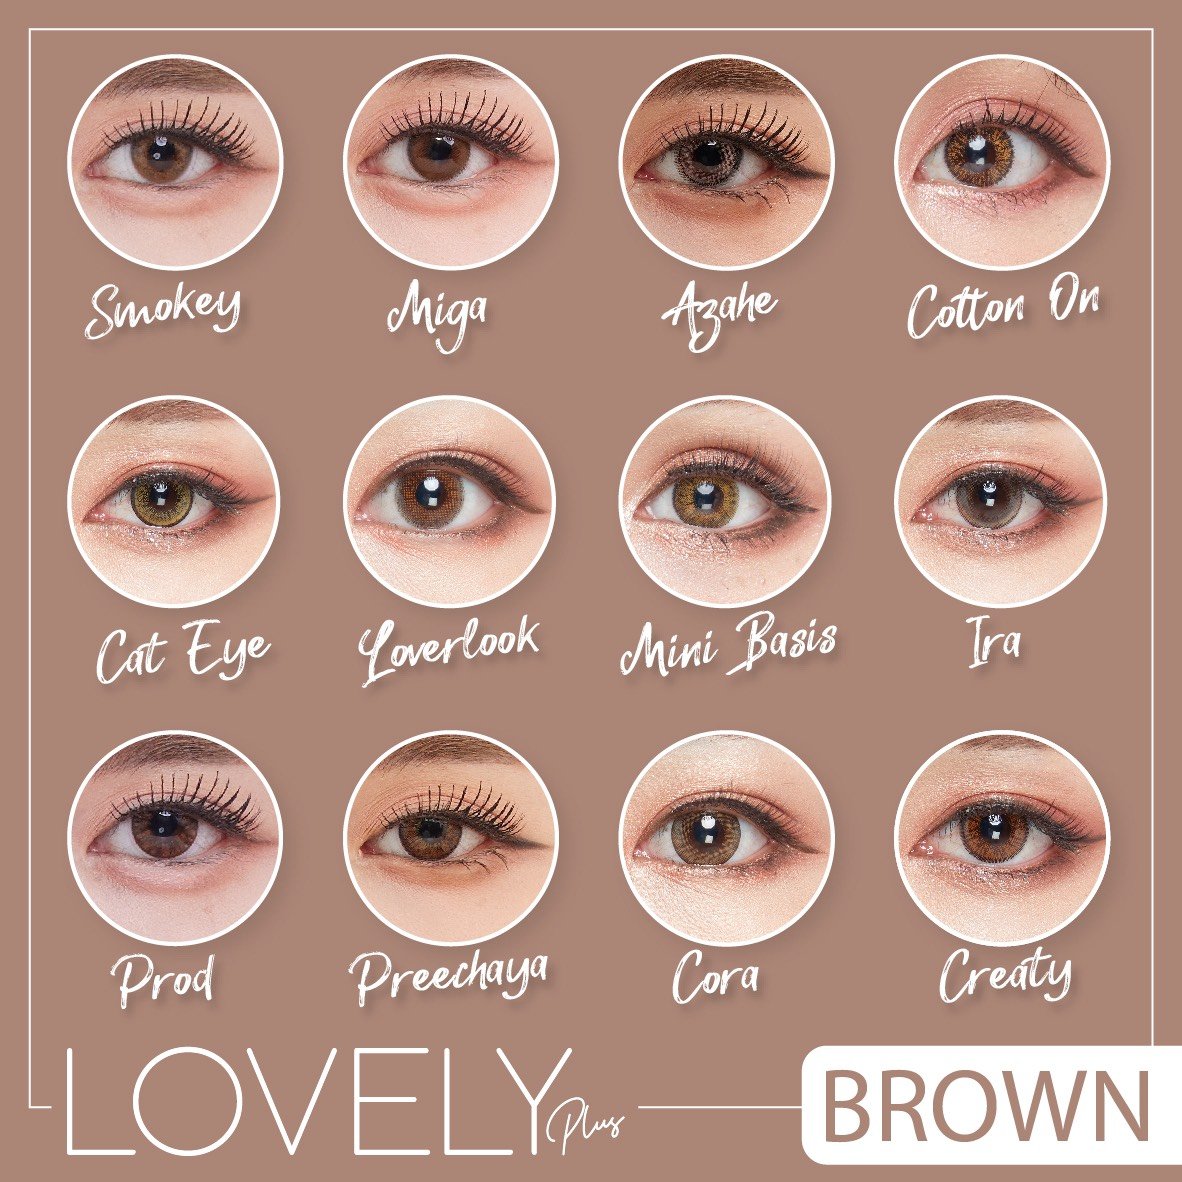 total brown